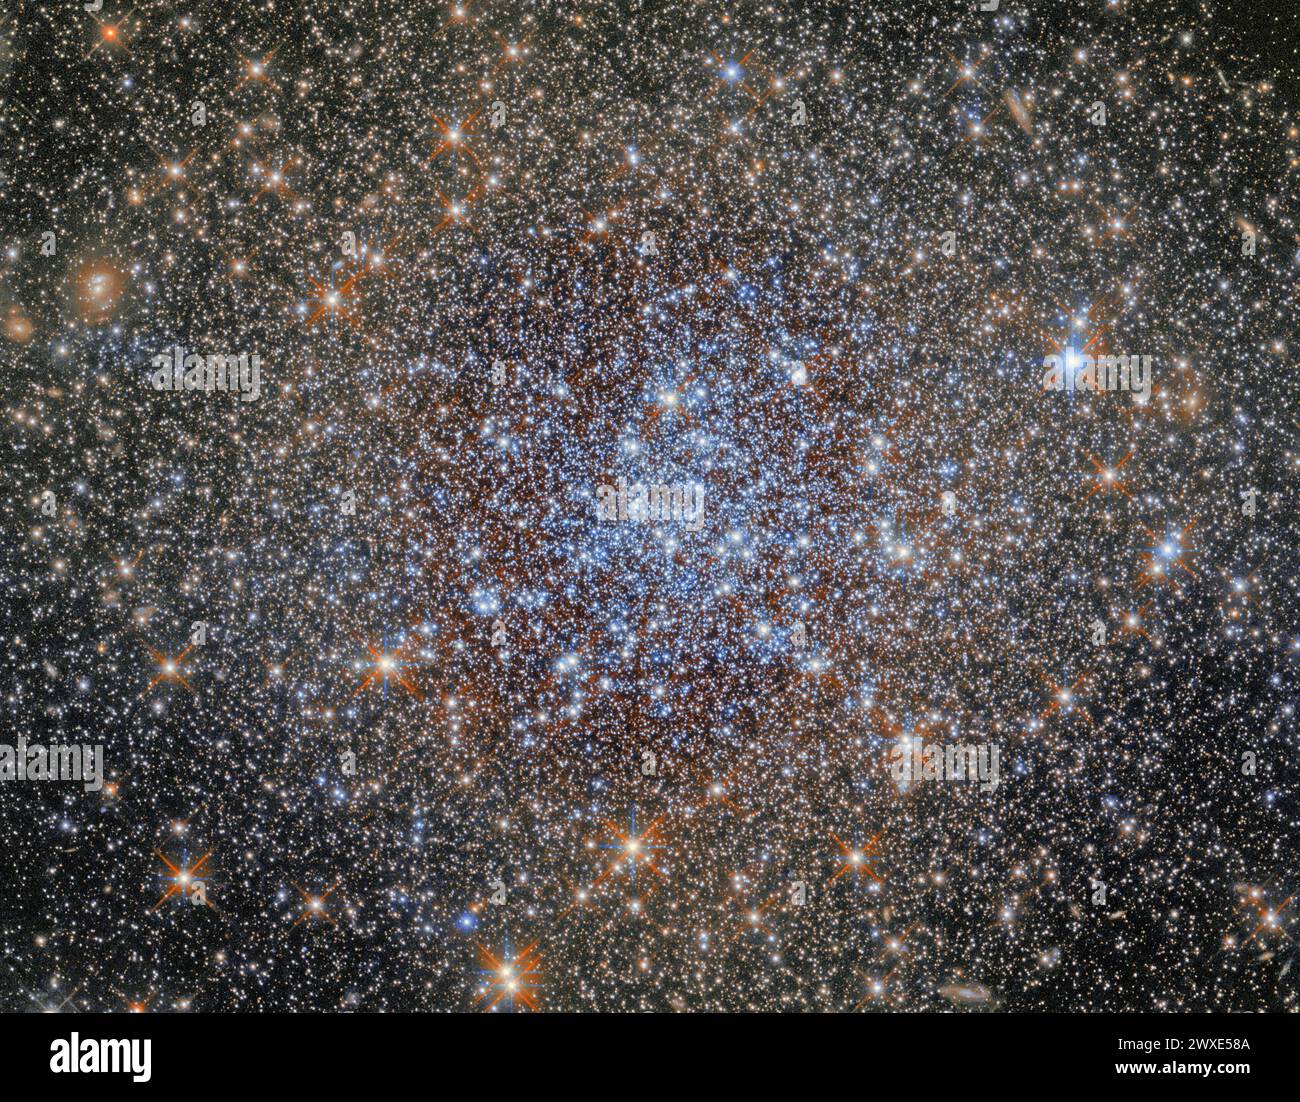 Cet amas dense d'étoiles est l'amas globulaire NGC 1841, qui fait partie du Grand nuage de Magellan (LMC), une galaxie satellite de notre voie Lactée qui se trouve à environ 162 000 années-lumière de distance. Des dizaines de galaxies satellites orbitent autour de notre galaxie. La plus grande et la plus brillante de celles-ci est la LMC, qui est facilement visible à l'œil nu depuis l'hémisphère sud dans des conditions de ciel sombre loin de la pollution lumineuse. Une version optimisée et améliorée d'une image originale de Hubble. Crédit image : ESA/Hubble & NASA/A.Sarajedini Banque D'Images